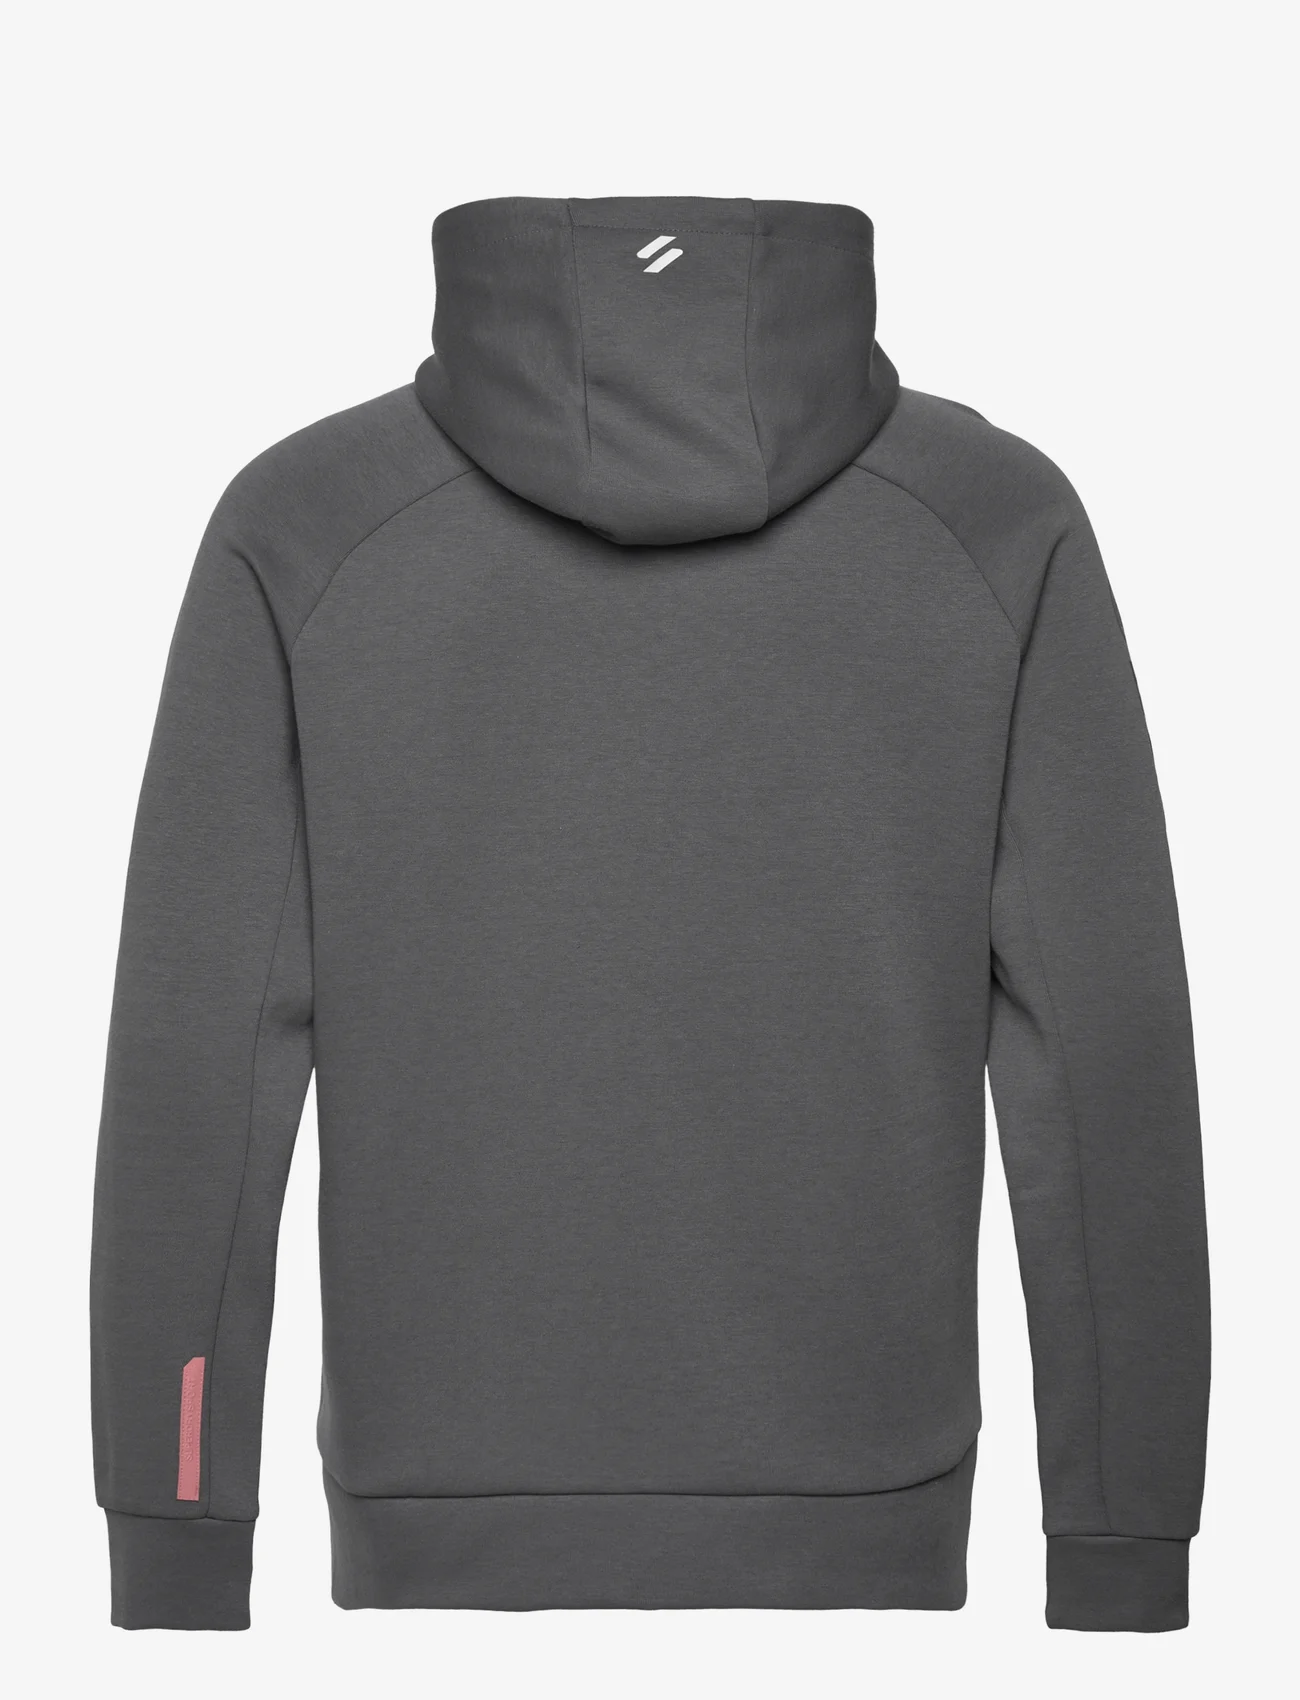 Superdry Sport - SPORT TECH LOGO LOOSE ZIP HOOD - hoodies - dark slate grey - 1